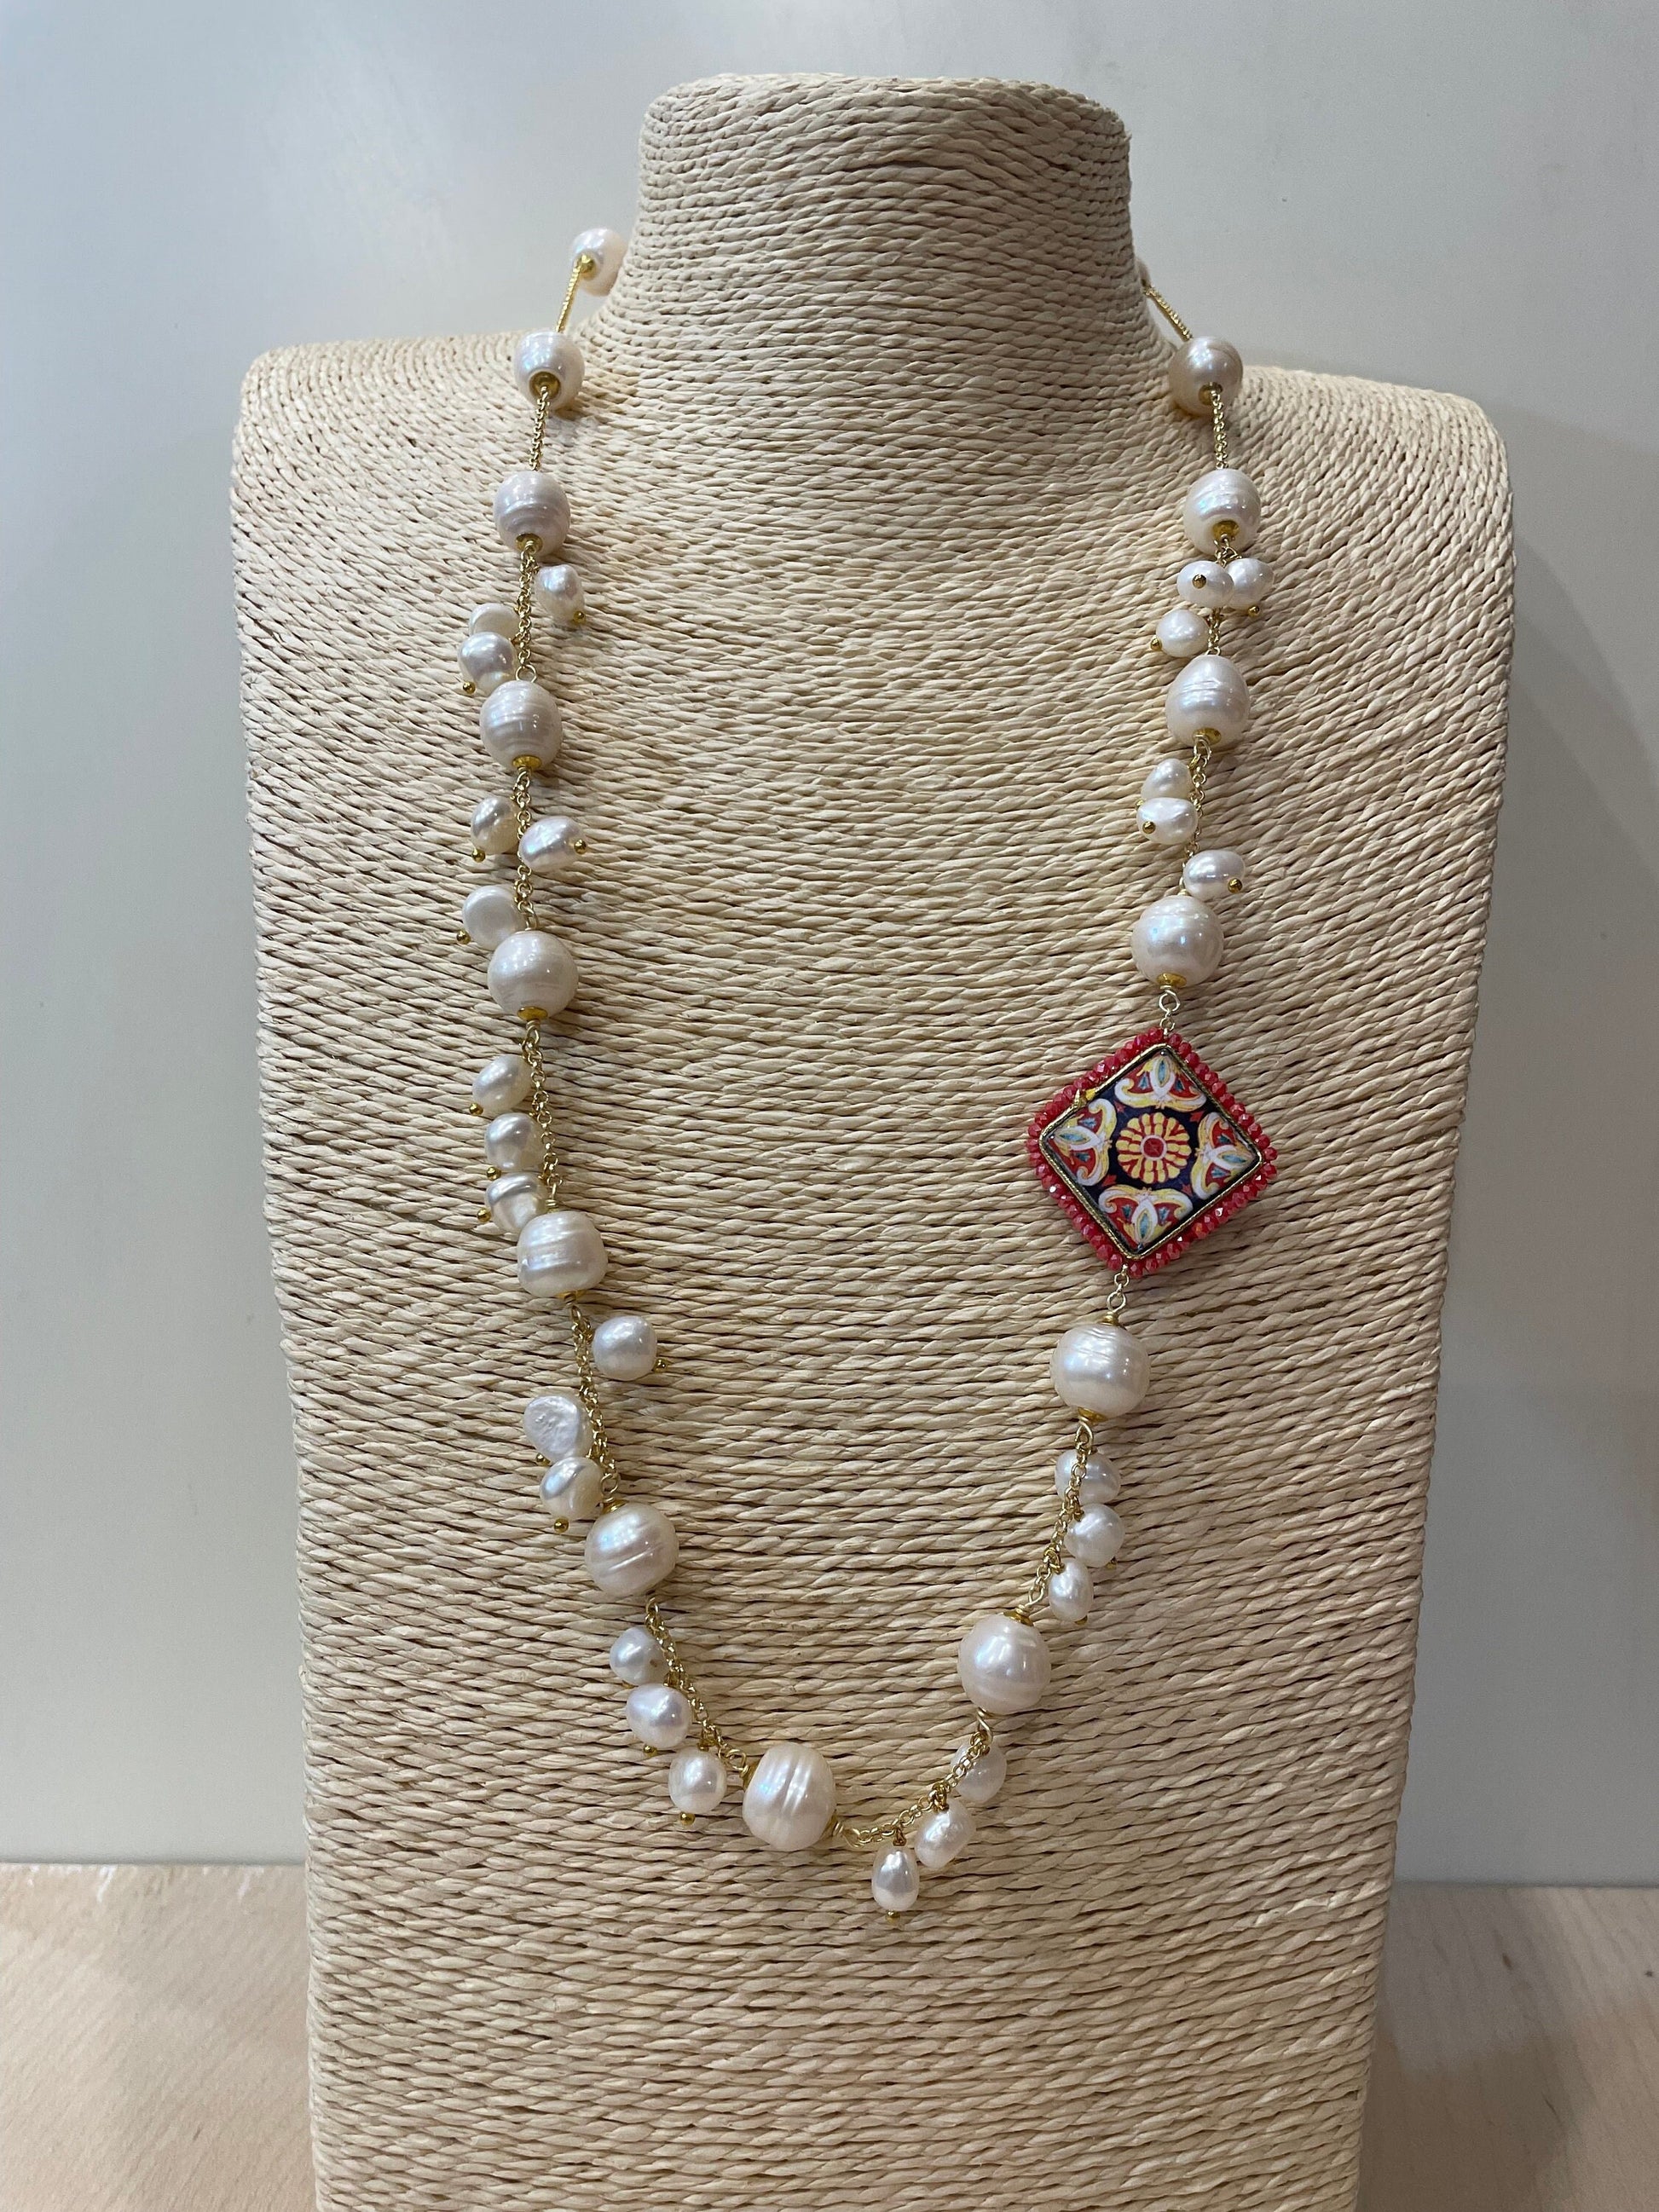 Collana siciliana con catena acciaio inossidabile, collana di perle di fiume, mattonella di ceramica di caltagirone, collana maiolica.)